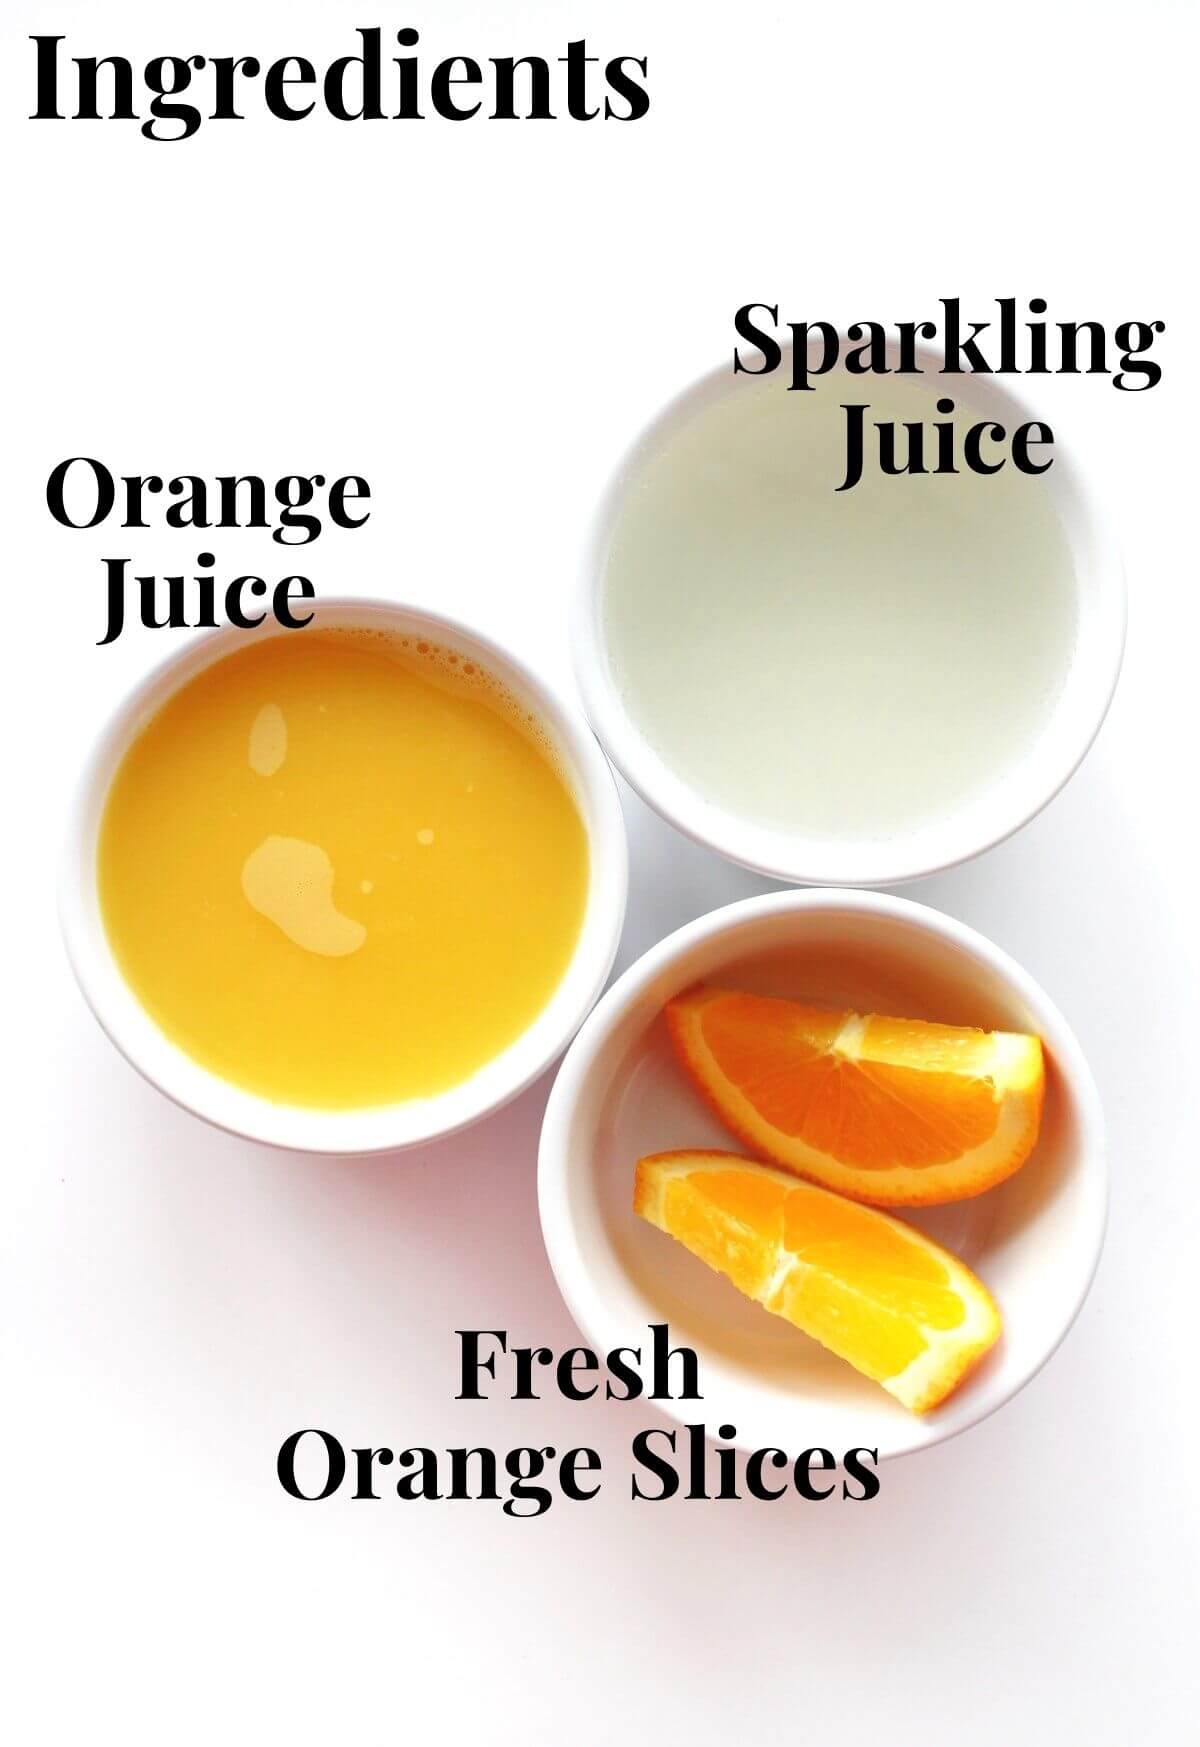 ingredients for virgin mimosas